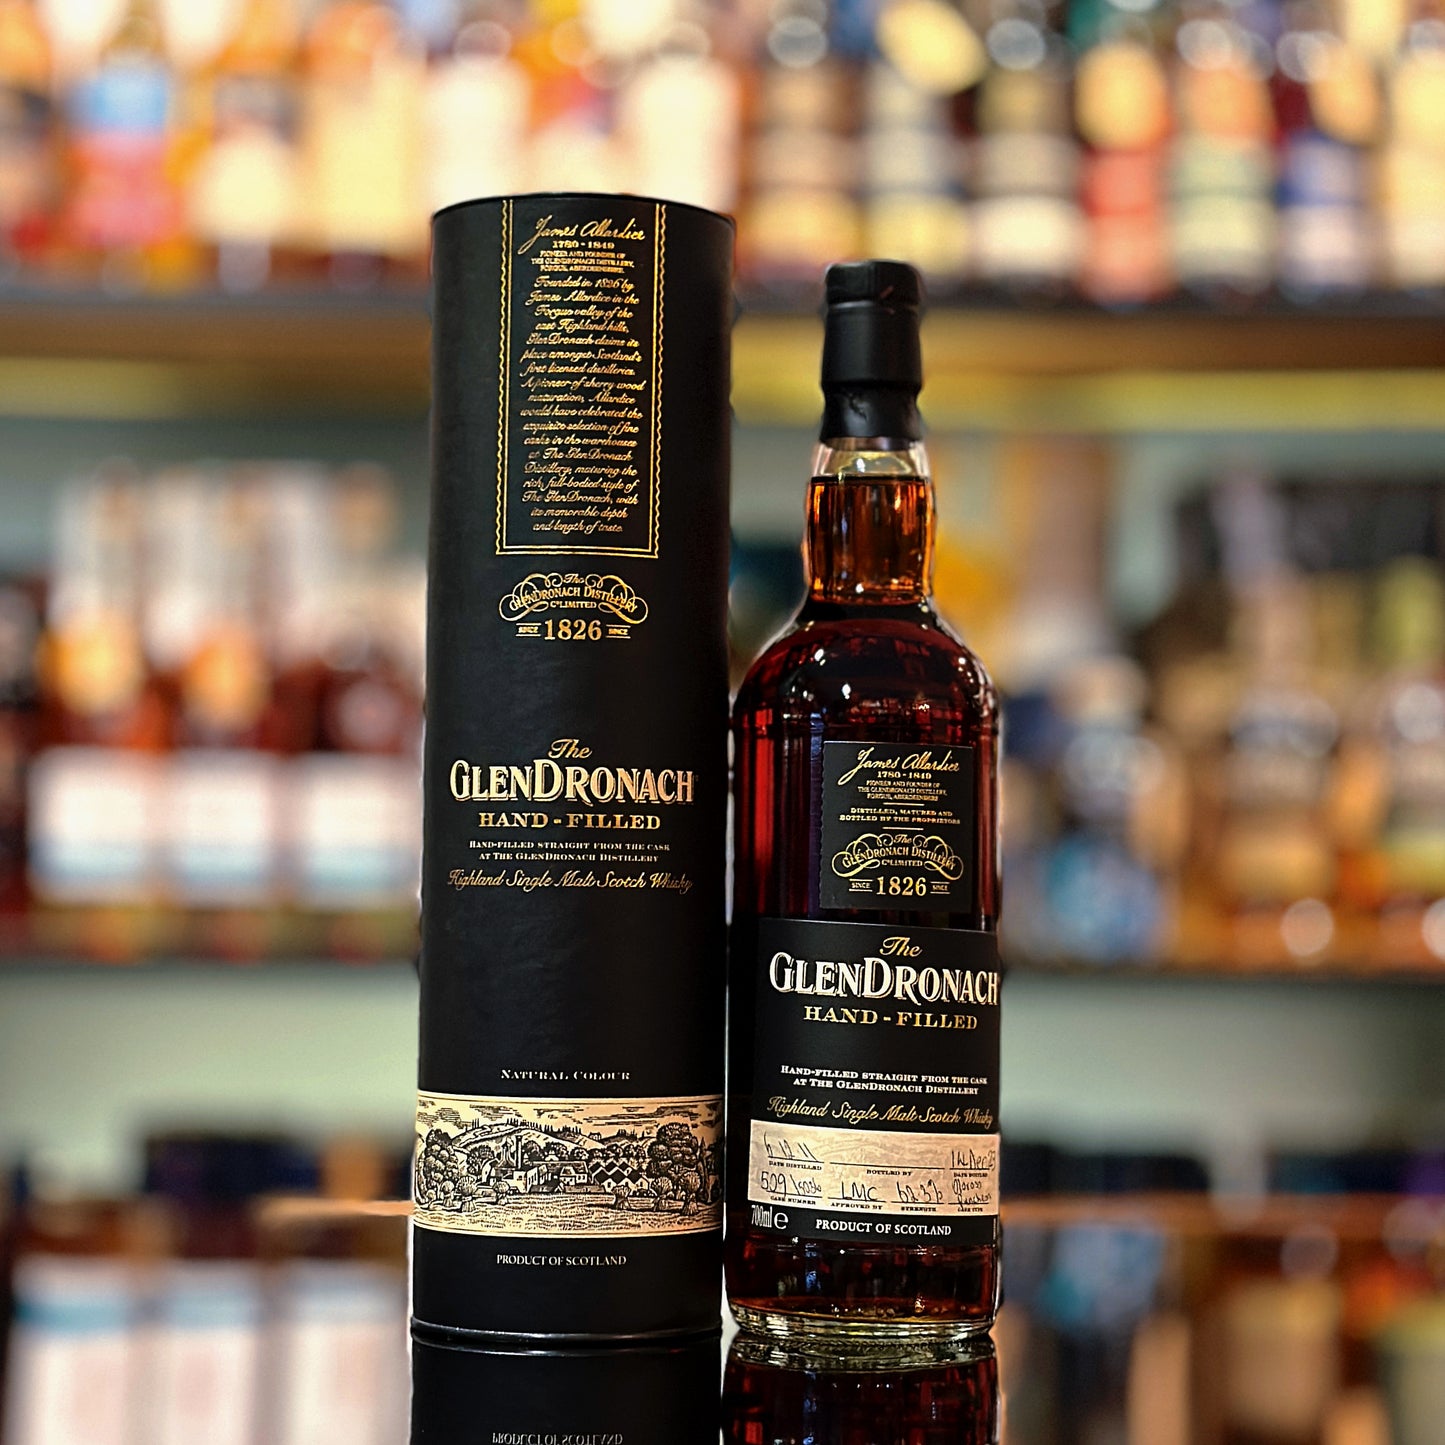 GlenDronach 11 Year Old 2011-2023 Hand-fill Cask #5036 Single Malt Scotch Whisky